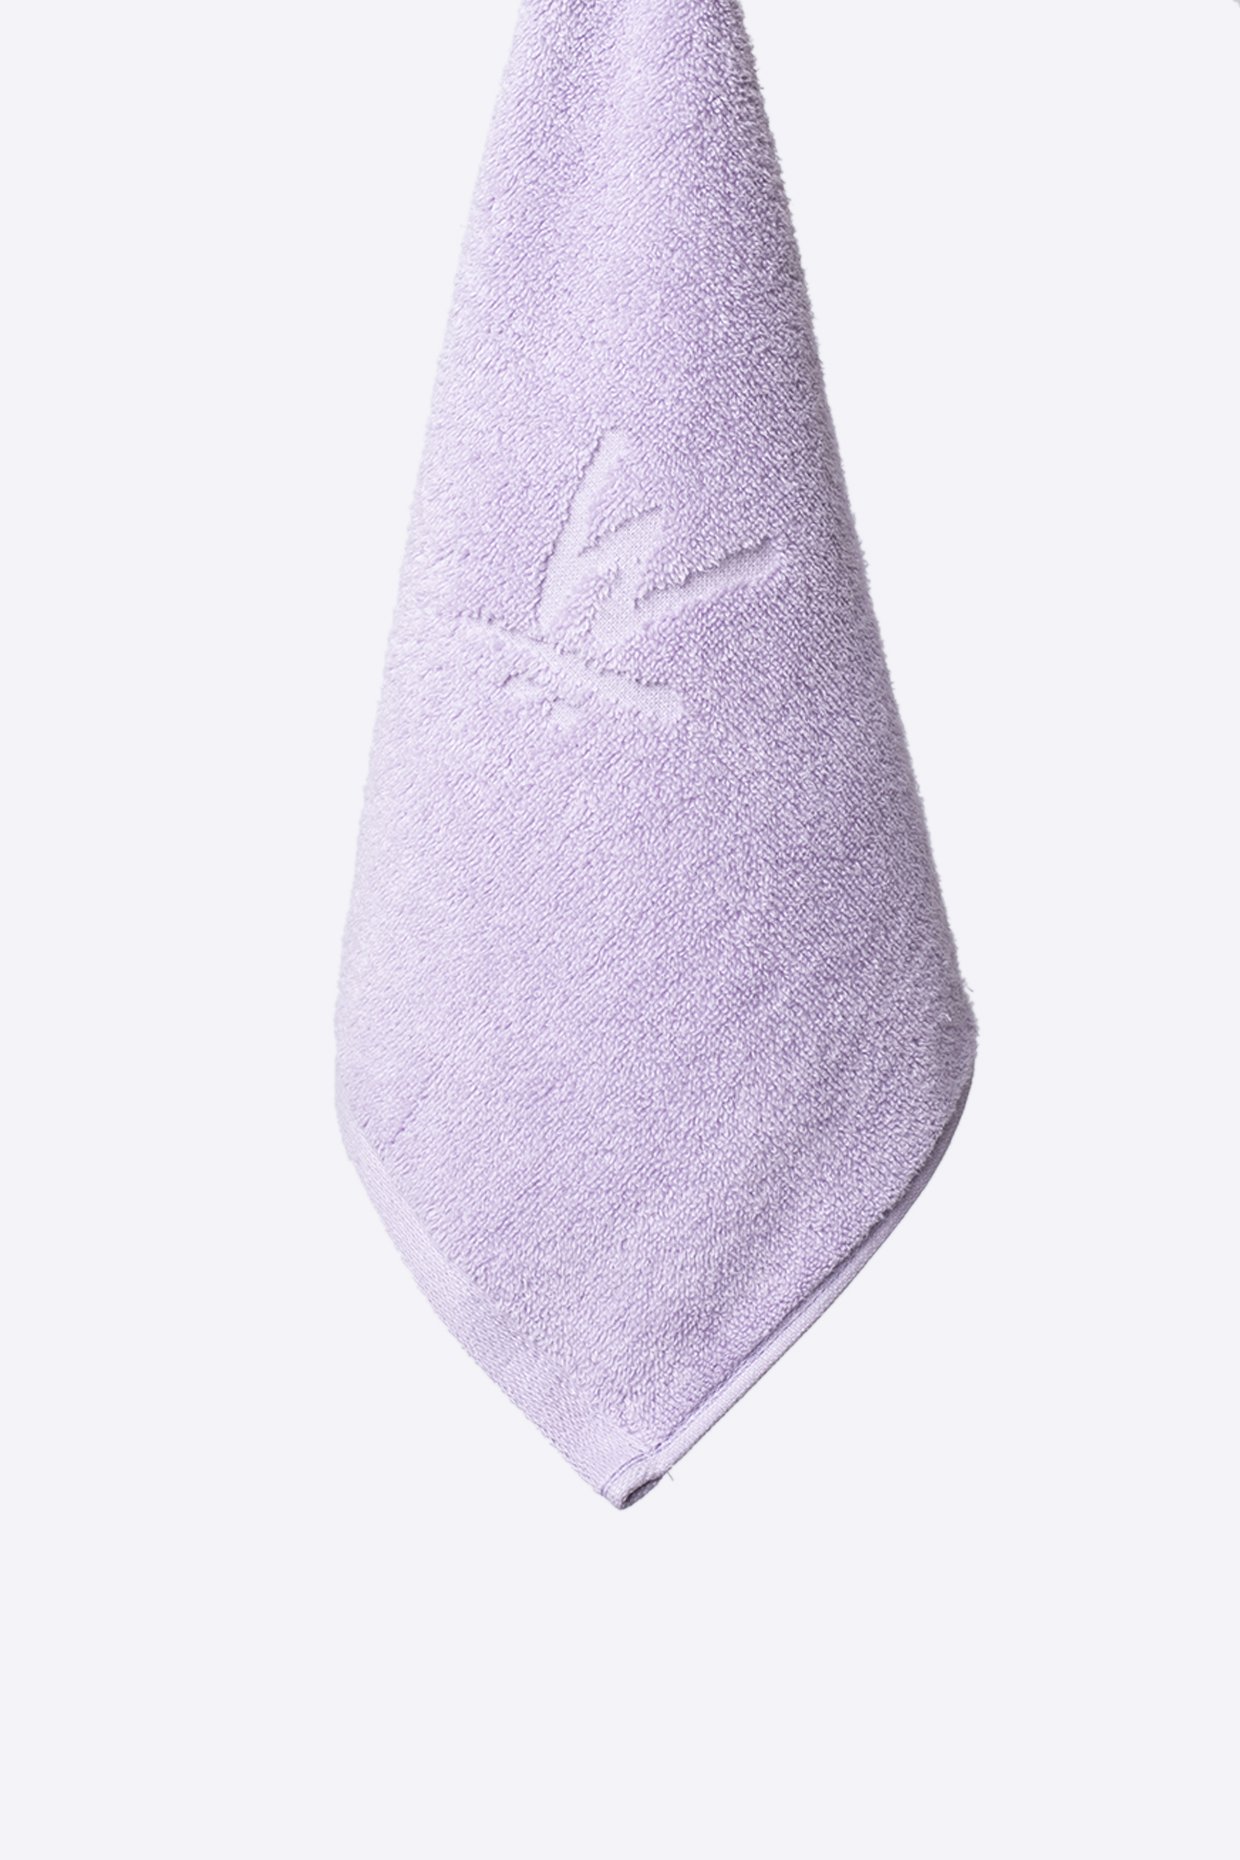 MAKEUP Face Towel Set Purple + White - Juego de toallas faciales, blanco y  violeta, Twins